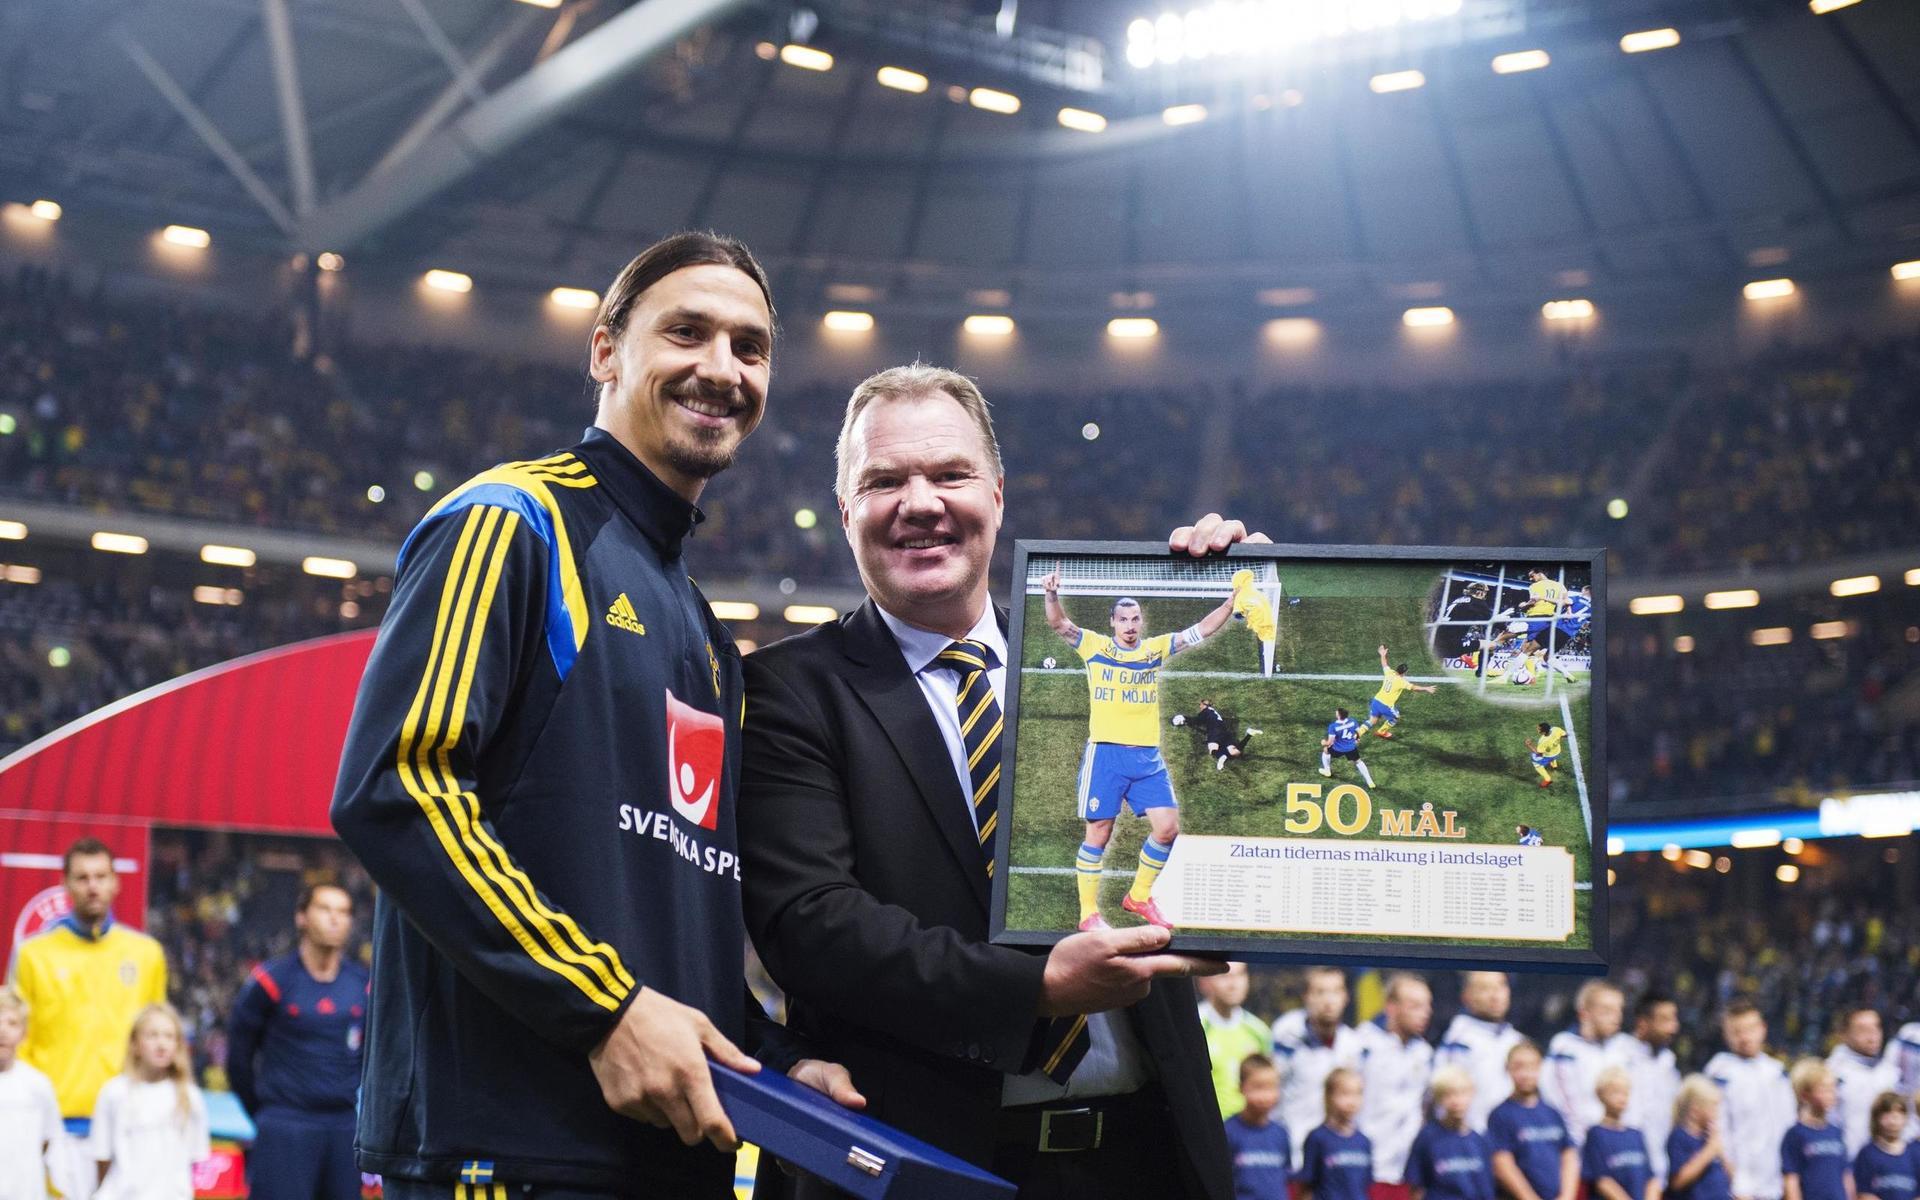 Zlatan Ibrahimovic tillsammans med Svenska Fotbollförbundets ordförande Karl-Erik Nilsson med anledning av att han gjort 50 mål inför fotbollsmatchen i EM-kvalet mellan Sverige och Ryssland den 9 oktober 2014 i Stockholm.